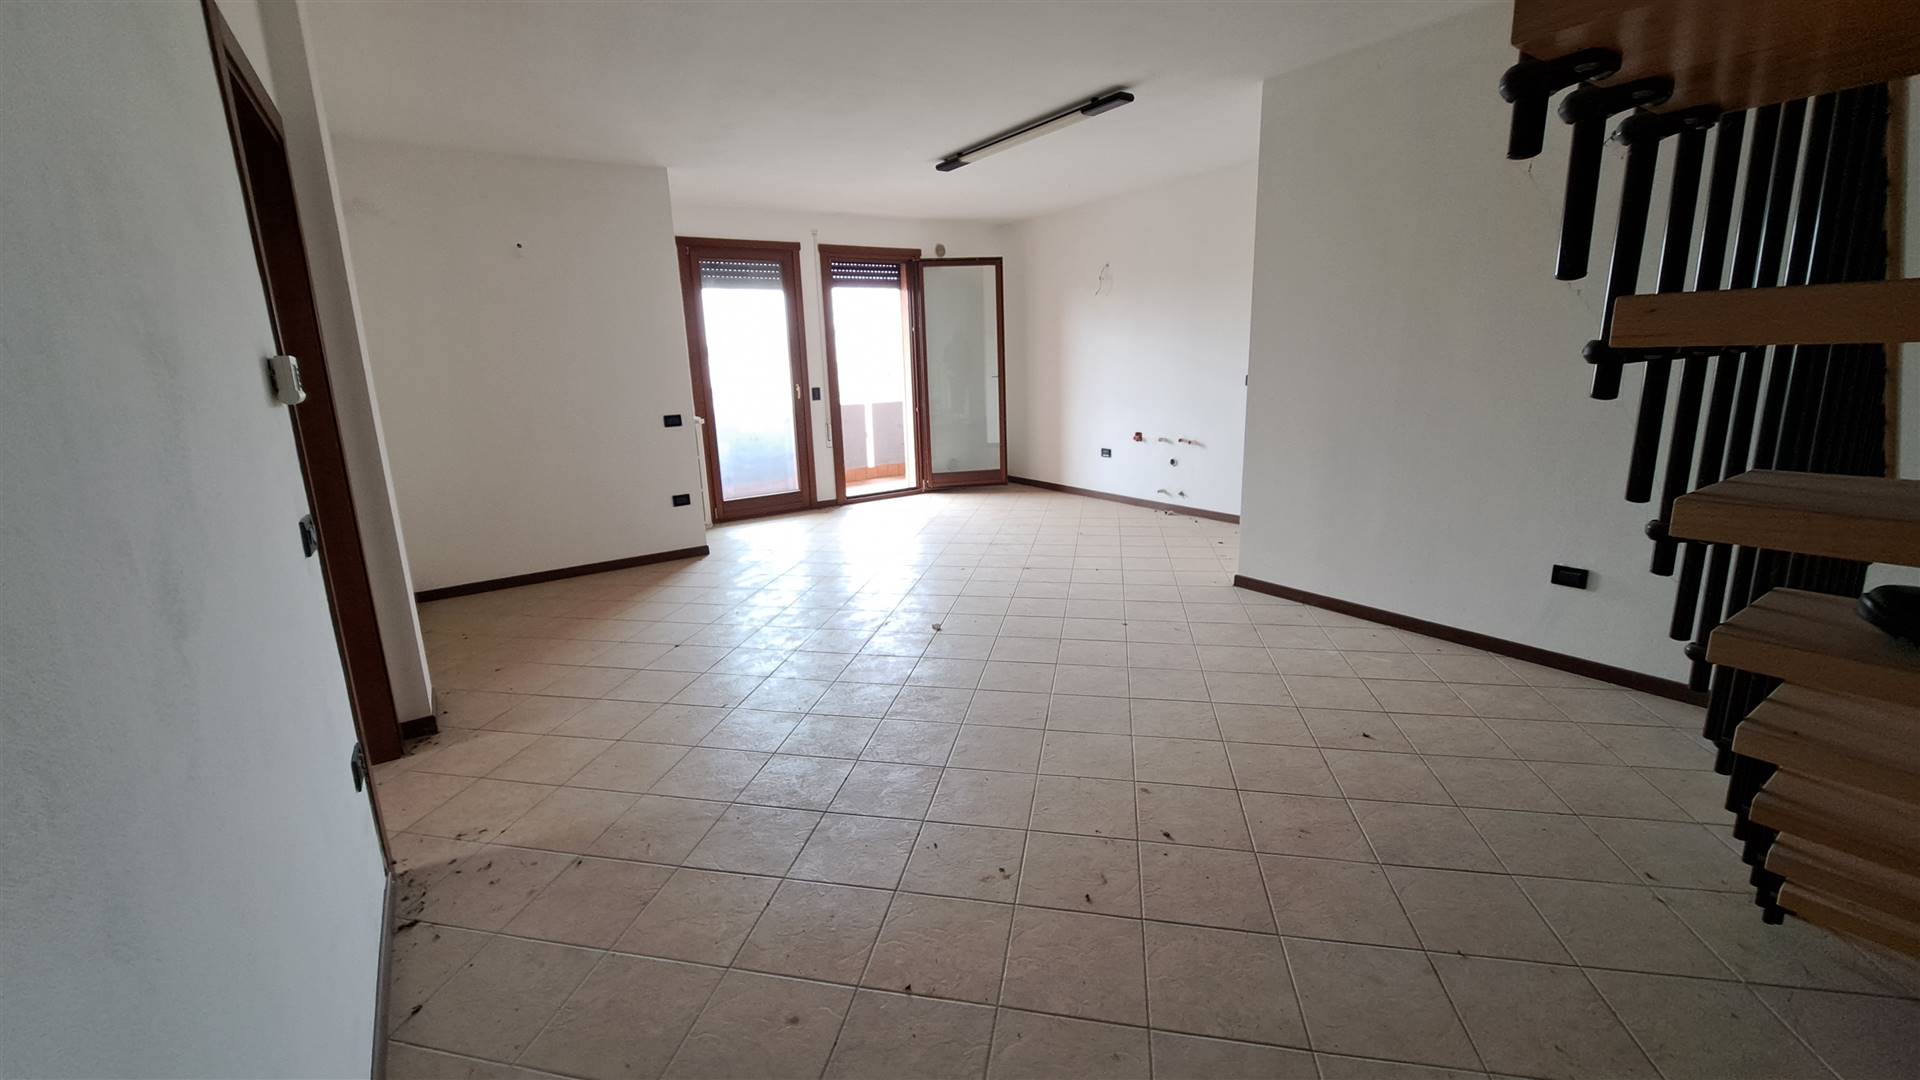 Appartamento in vendita a Casalserugo, 5 locali, prezzo € 130.000 | PortaleAgenzieImmobiliari.it